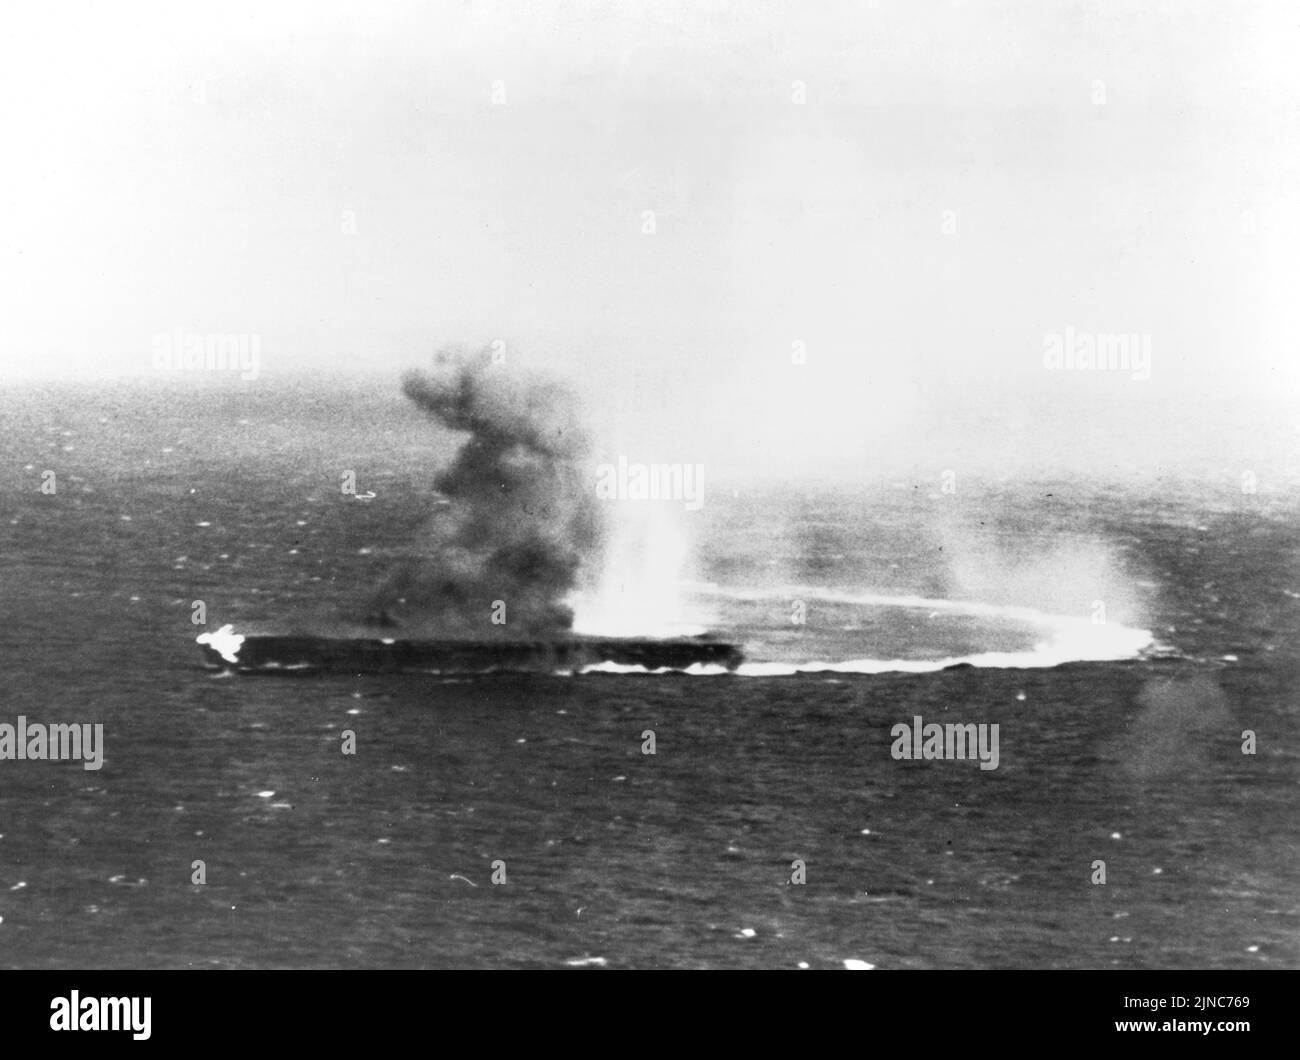 El portaaviones japonés Shōkaku, a gran velocidad y con un giro duro, ha sufrido ataques con bombas y está en llamas durante la Batalla del Mar de Coral en mayo de 1942. Foto de stock